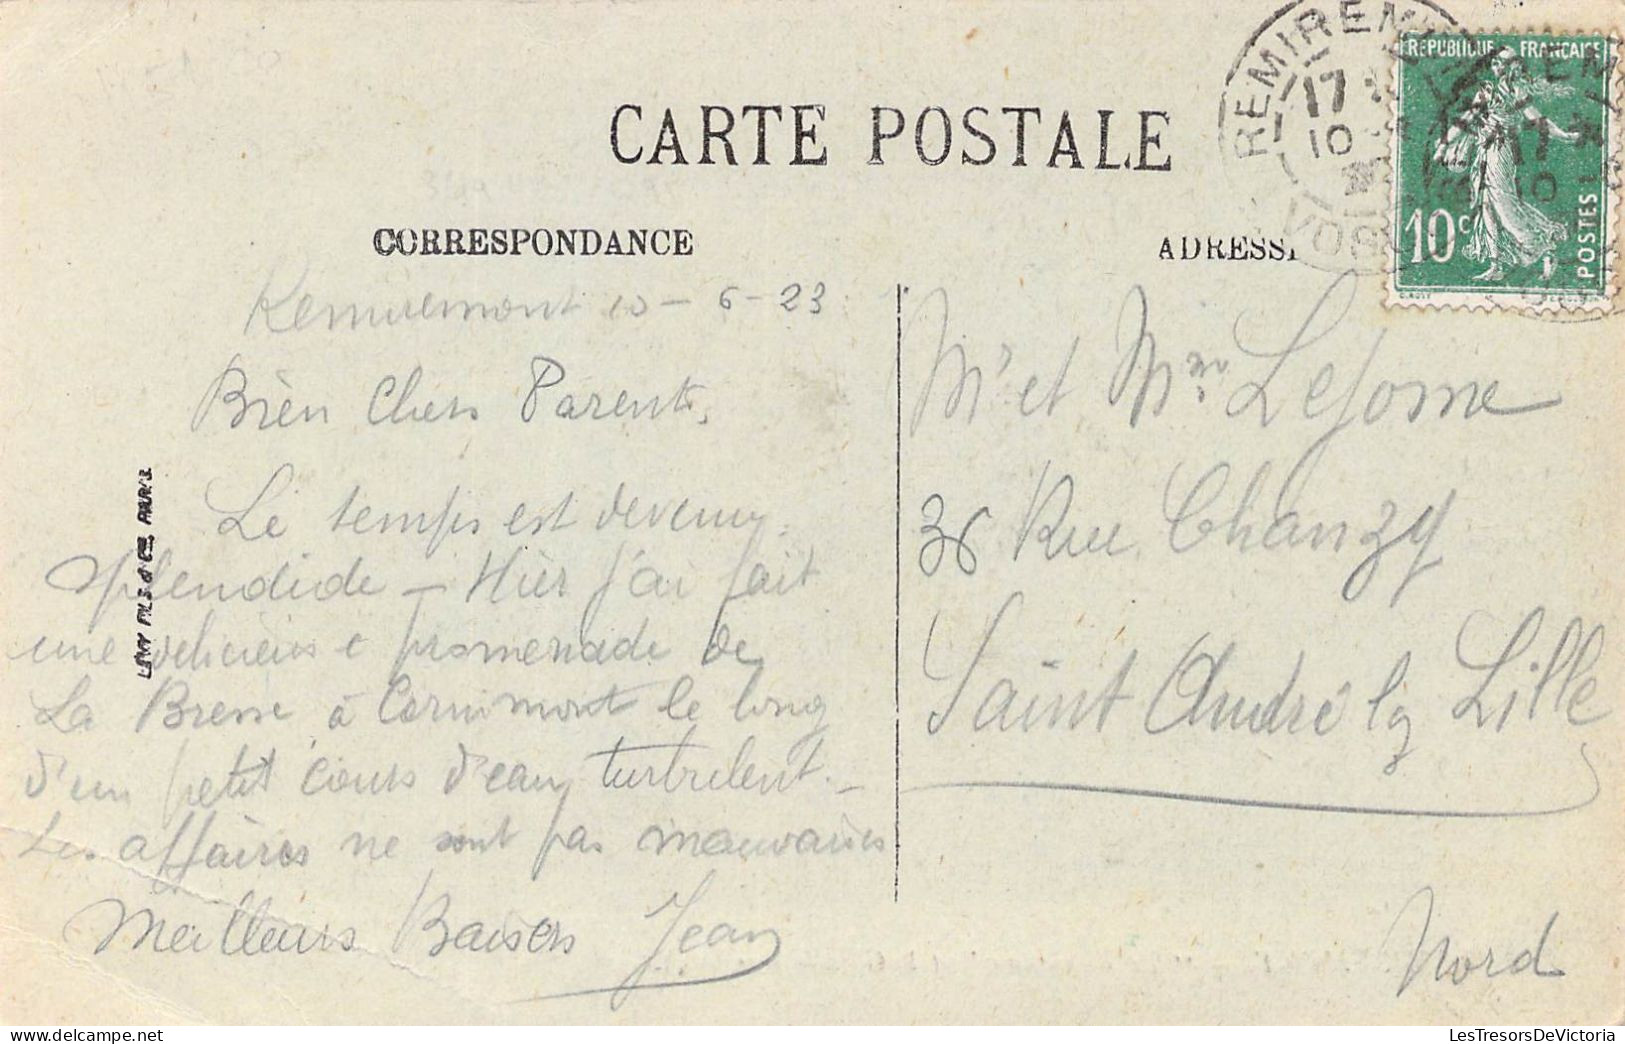 FRANCE - 88 - REMIREMONT - Le Volontaire Et La Grande Rue - LL - Carte Postale Ancienne - Remiremont